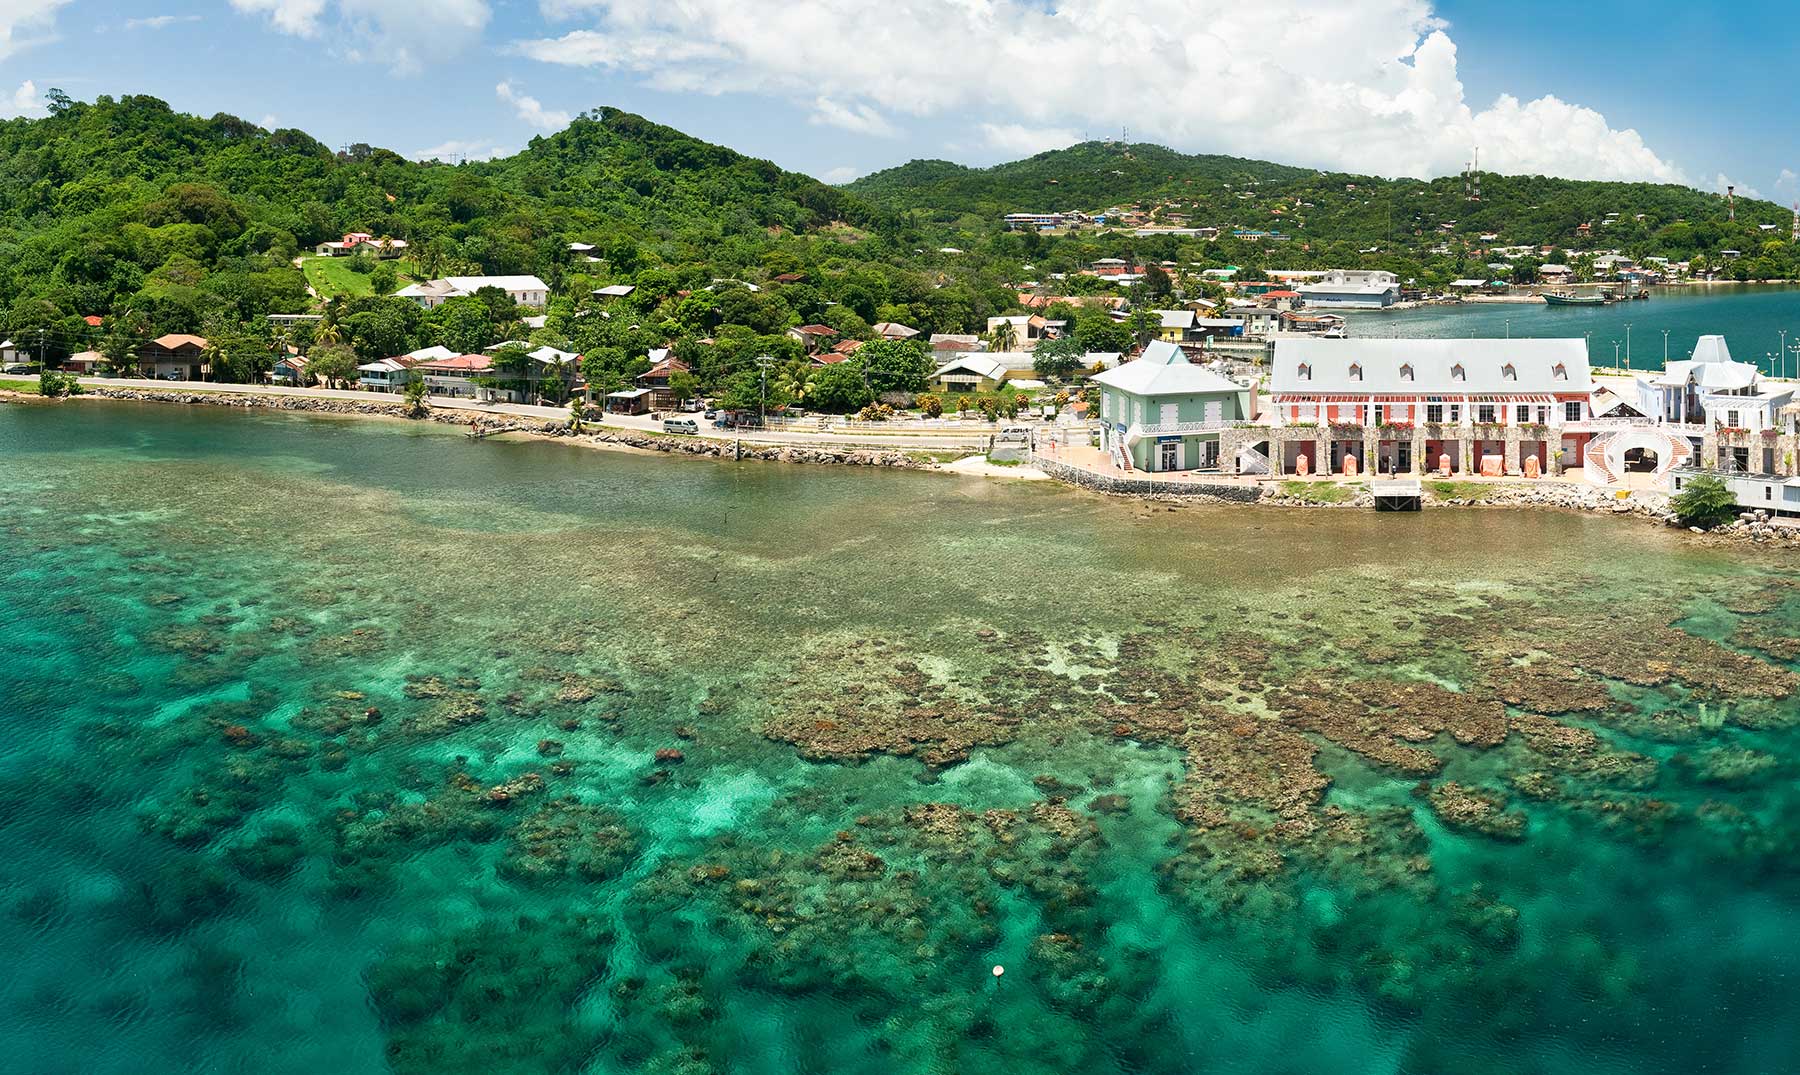 síndrome pausa bostezando Islas de la Bahía, un destino paradisíaco - El Viajero Feliz